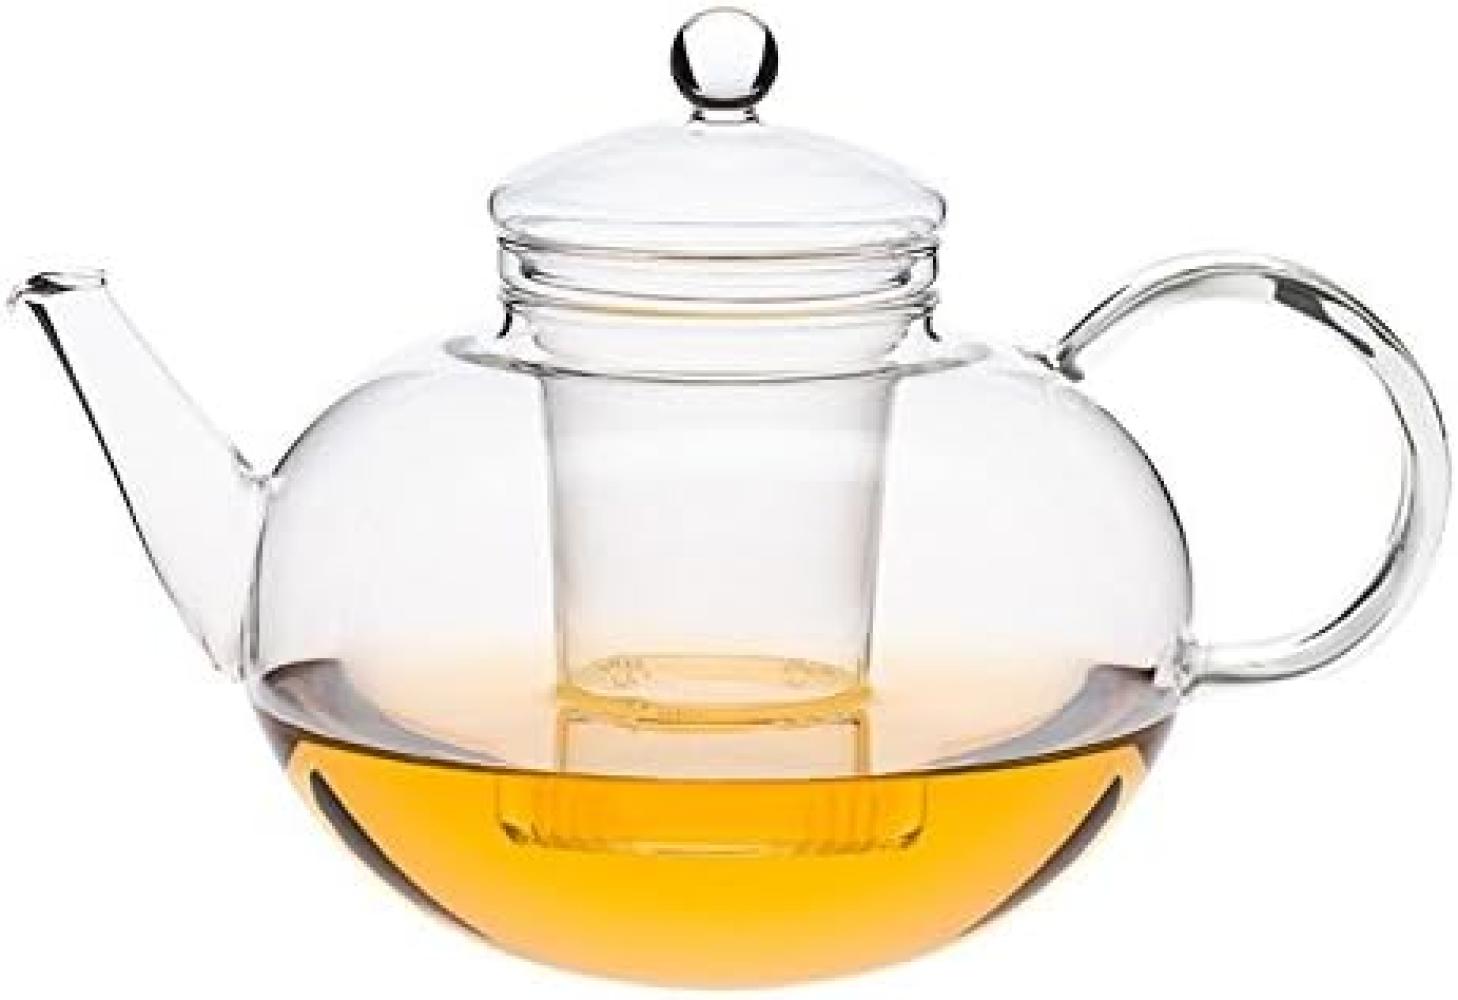 Jenaer Glas Teekanne MIKO – der Klassiker unter den Teekannen Teekanne Miko aus Glas, 2 l Bild 1